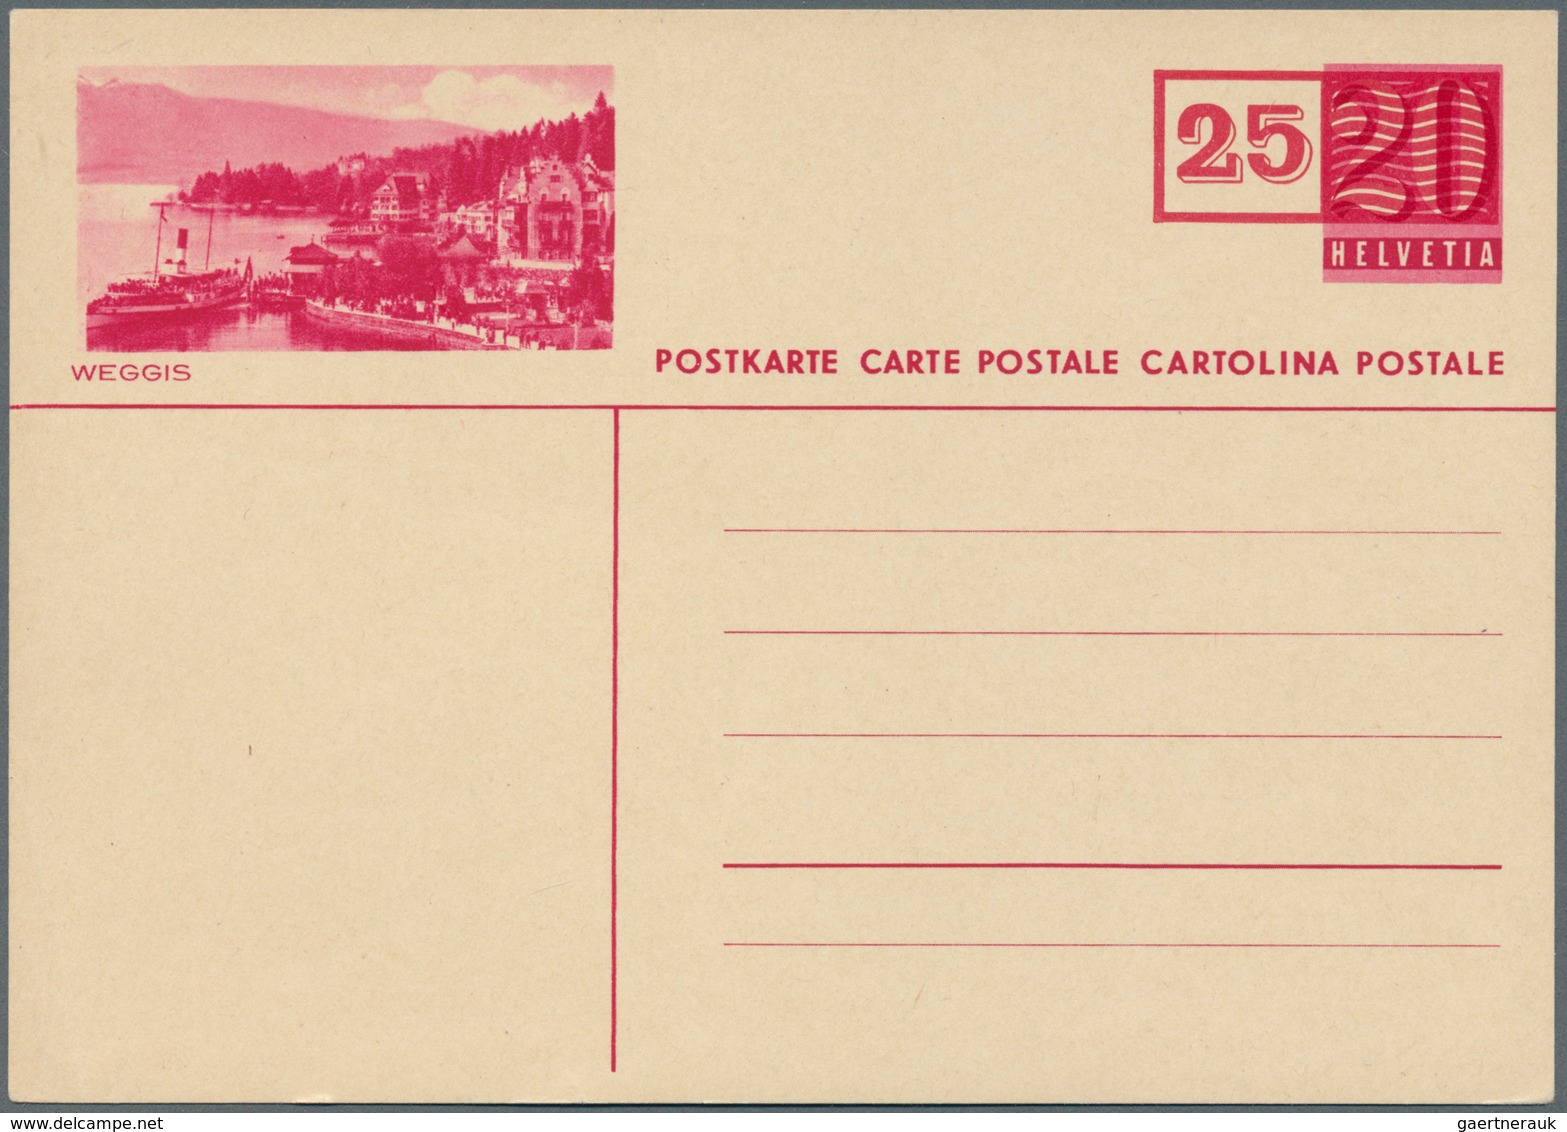 Schweiz - Ganzsachen: 1948. Lot von 9 Bild-Postkarten 25 auf 20 (c), nur versch. Bilder, dabei auch